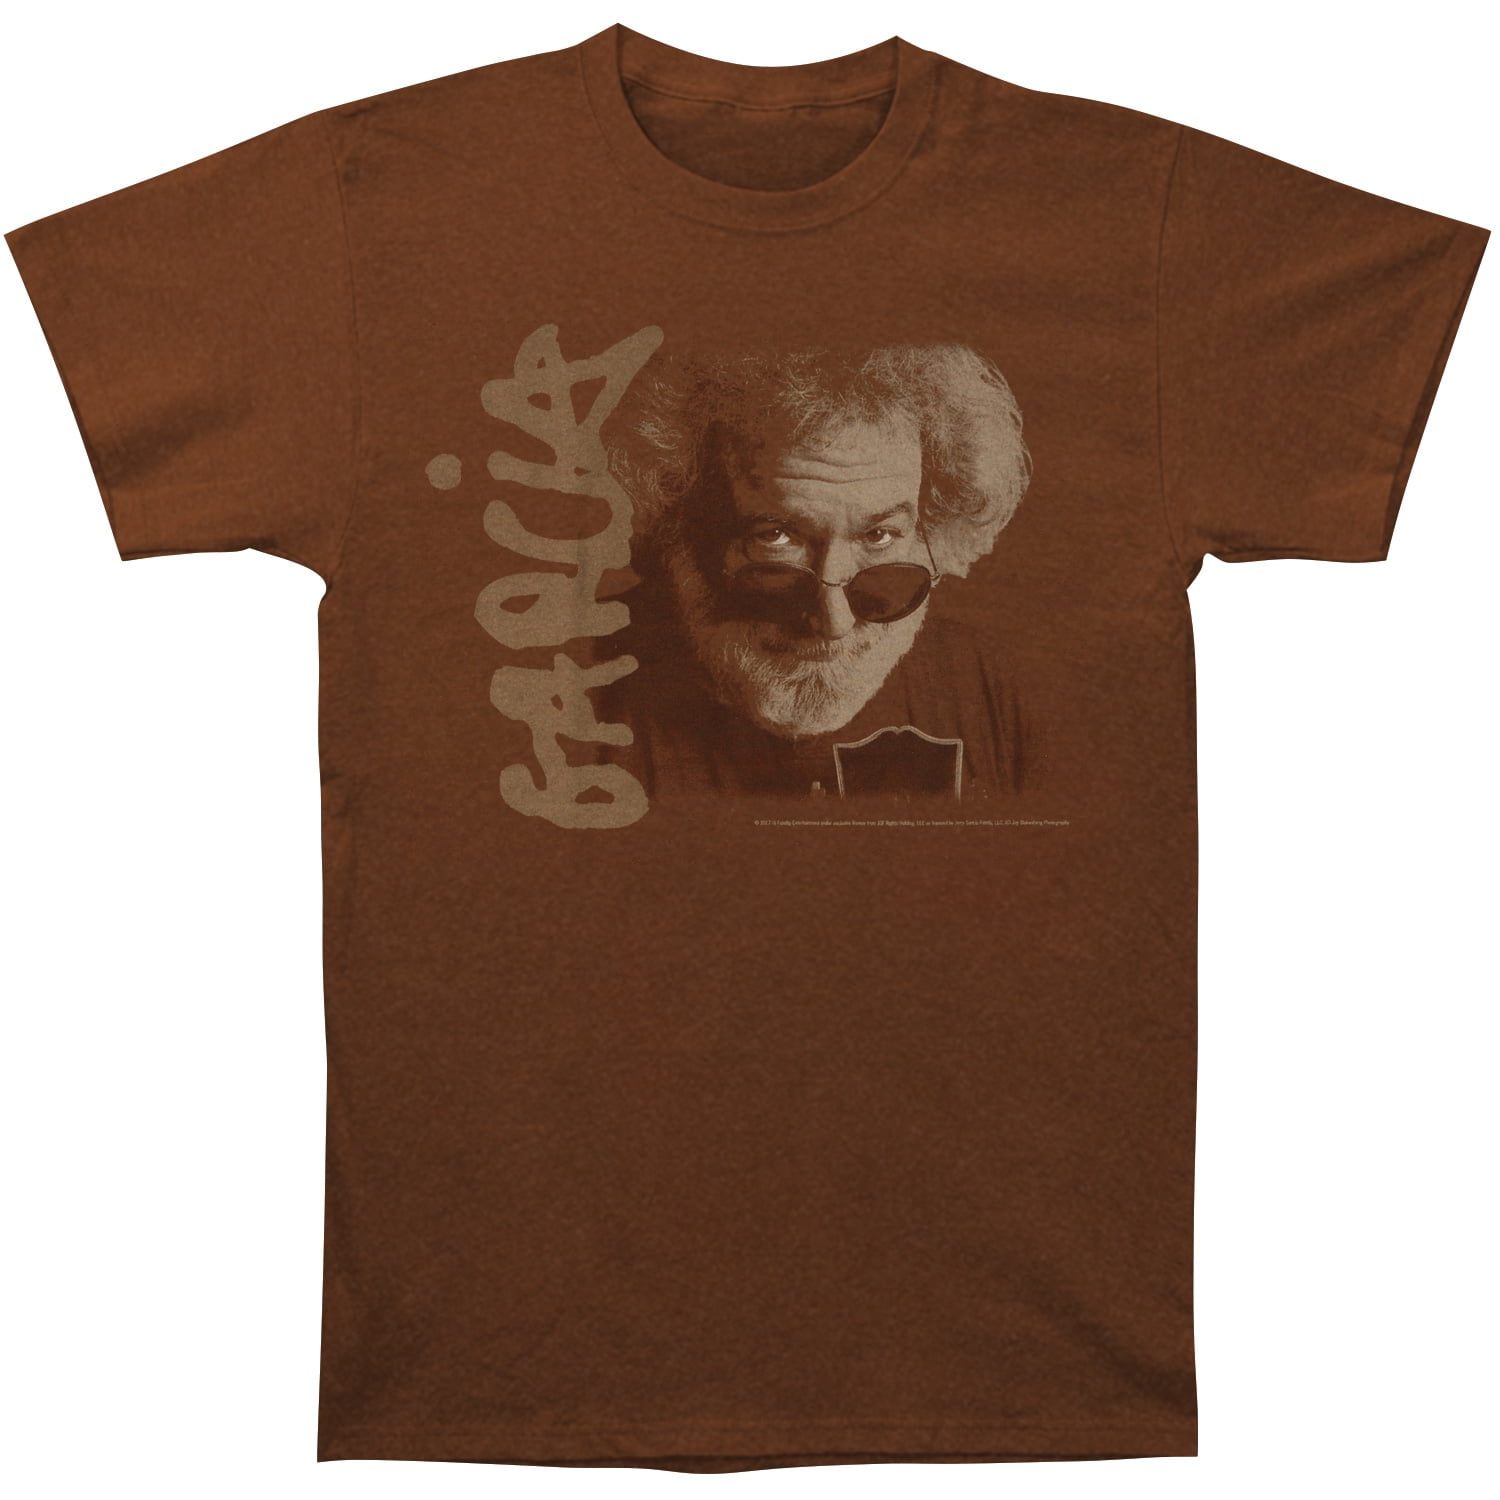 Jerry Garcia portrait t-shirts